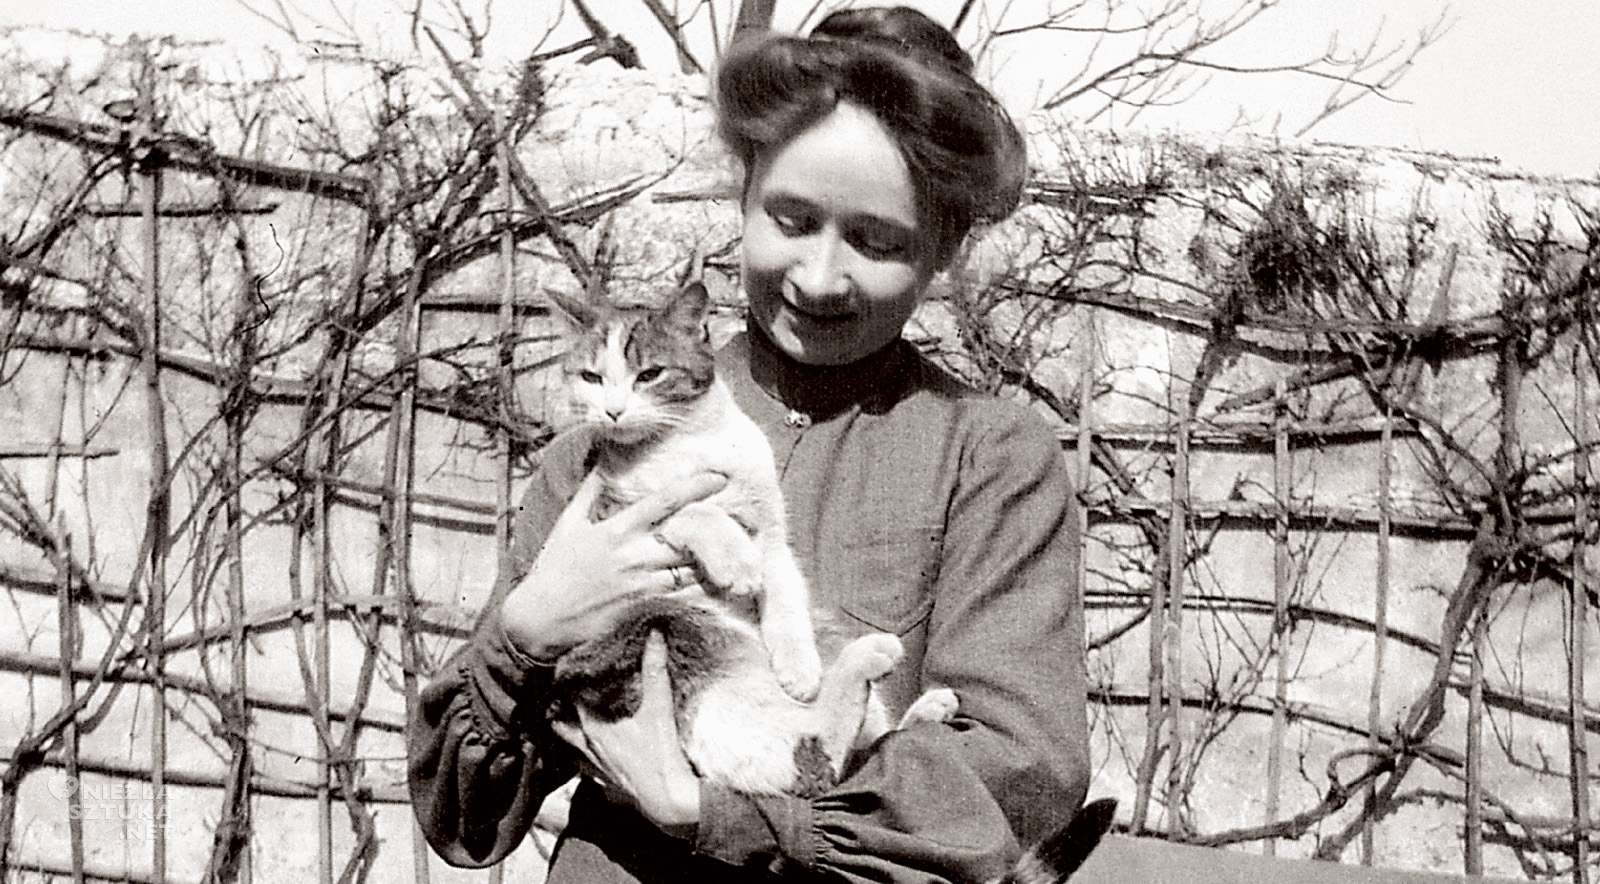 Gabriele Münter, kot, kobiety w sztuce, Niezła Sztuka